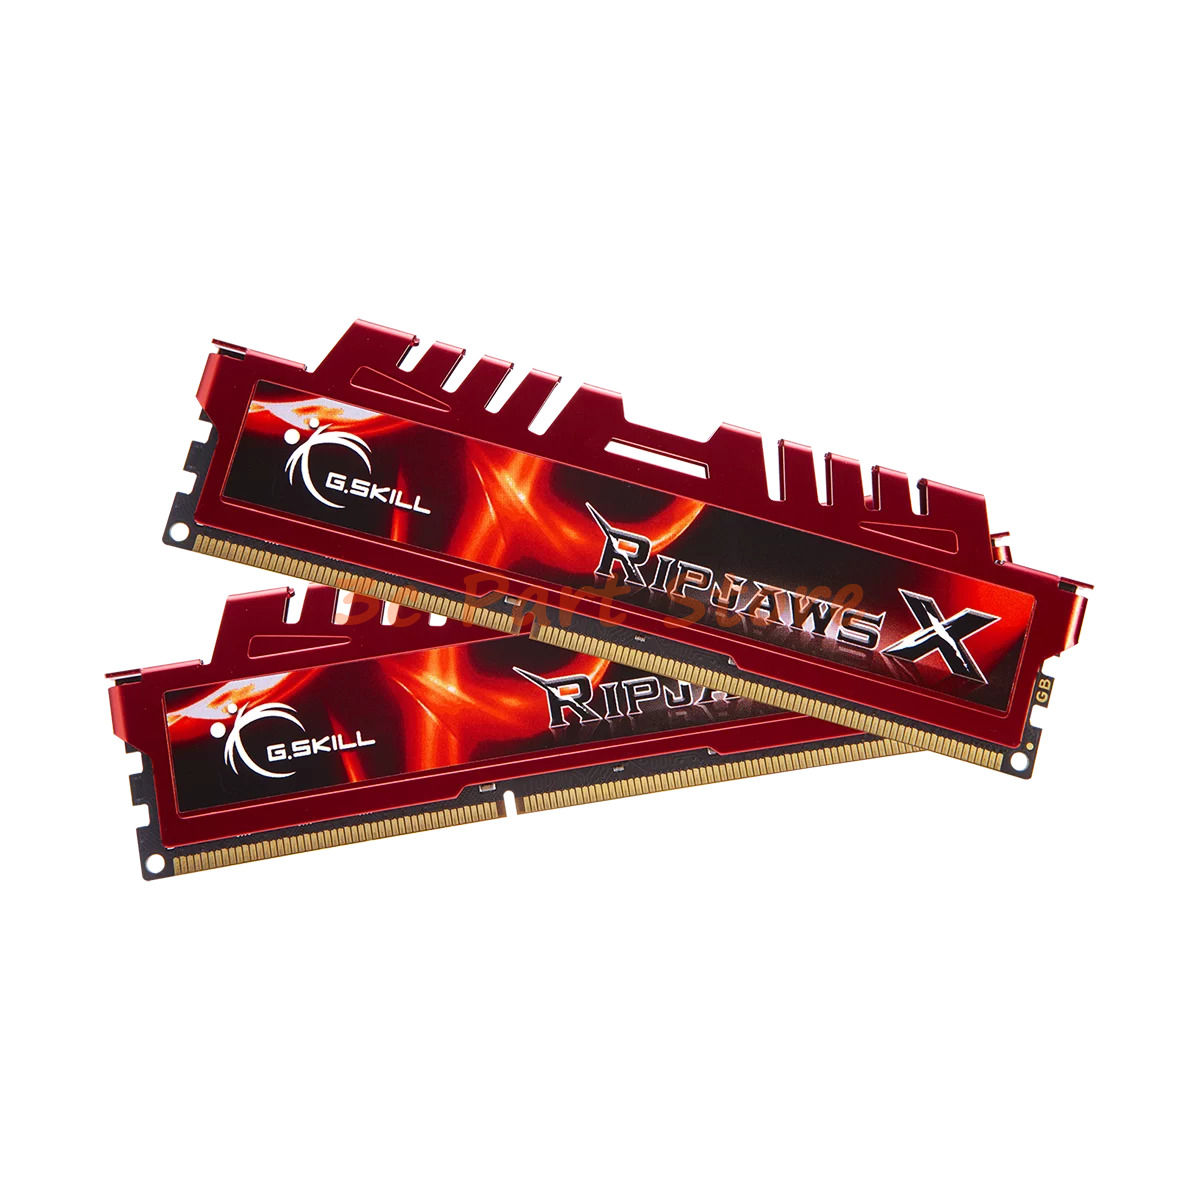 G.SKILL Ripjaws X 16GB (2x8GB) 240-Pin PC DDR3 1866 PC3 14900 Desktop Memory Red